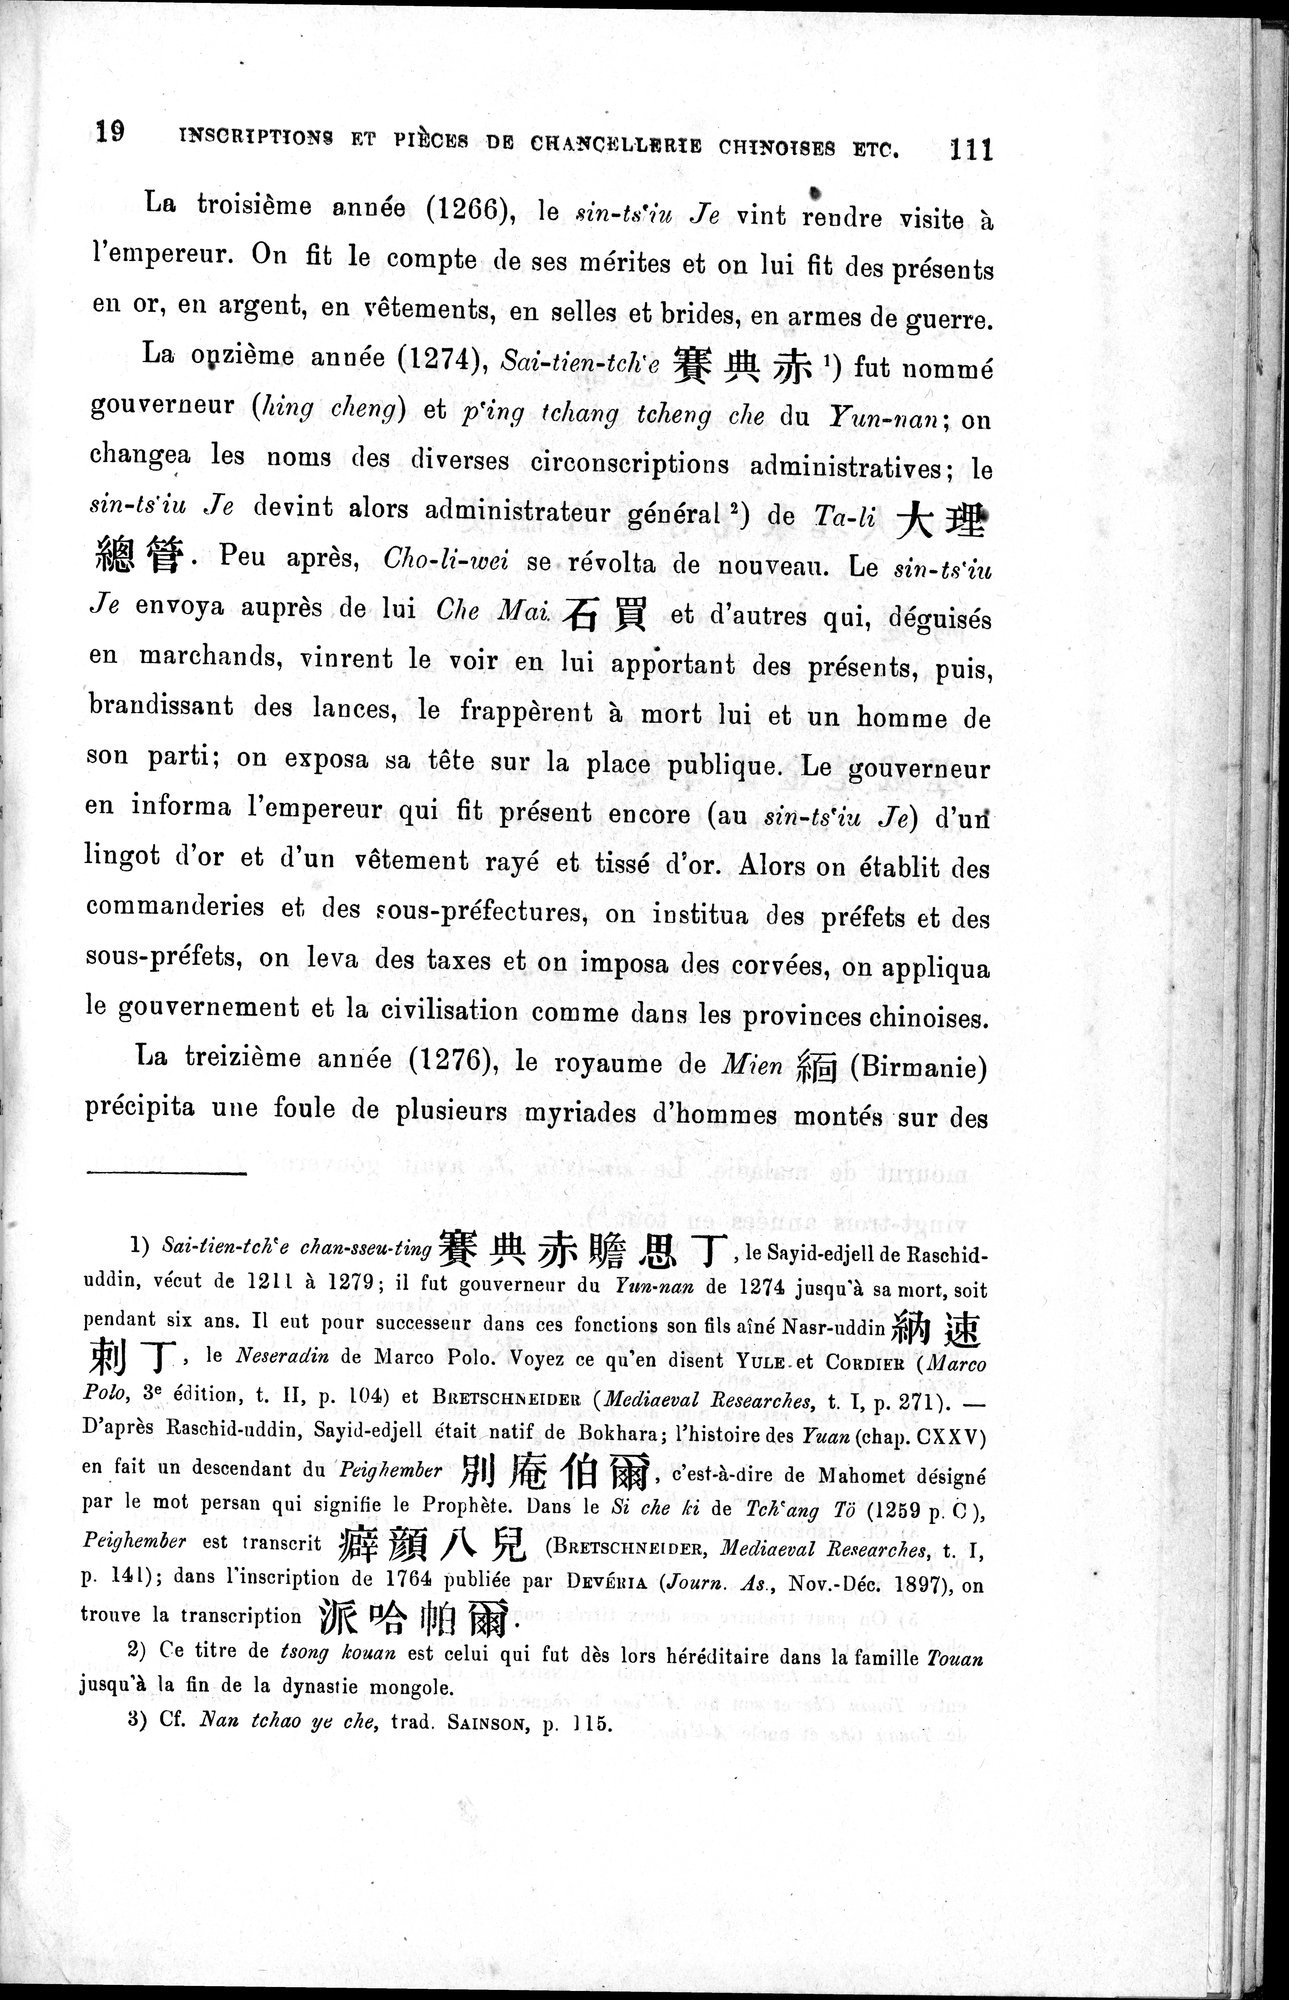 Inscriptions et pièces de Chancellerie Chinoises de l'époque mongol : vol.1 / Page 131 (Grayscale High Resolution Image)